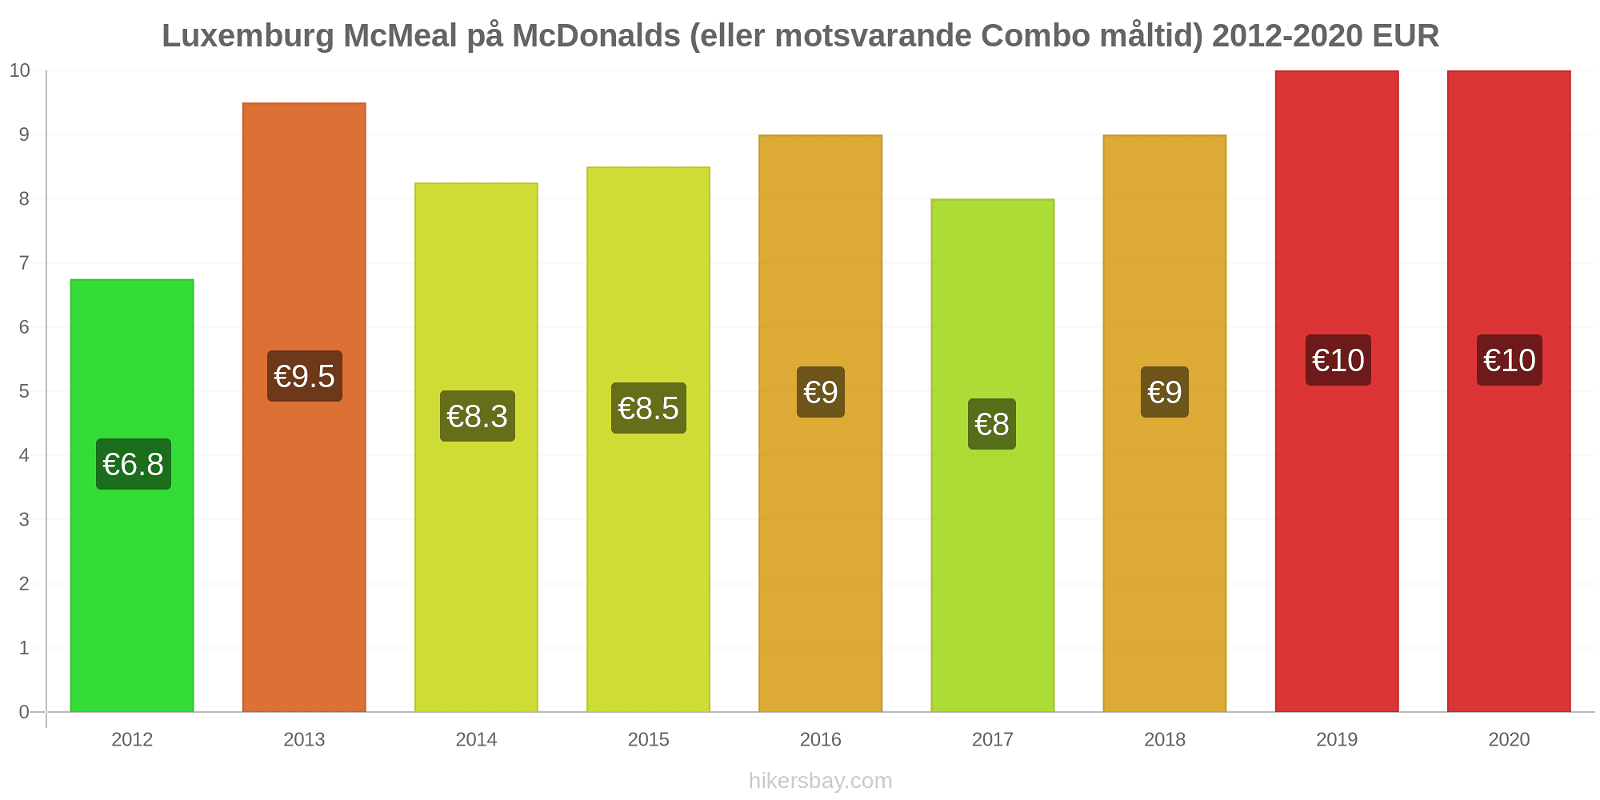 Luxemburg prisförändringar McMeal på McDonalds (eller motsvarande Combo måltid) hikersbay.com